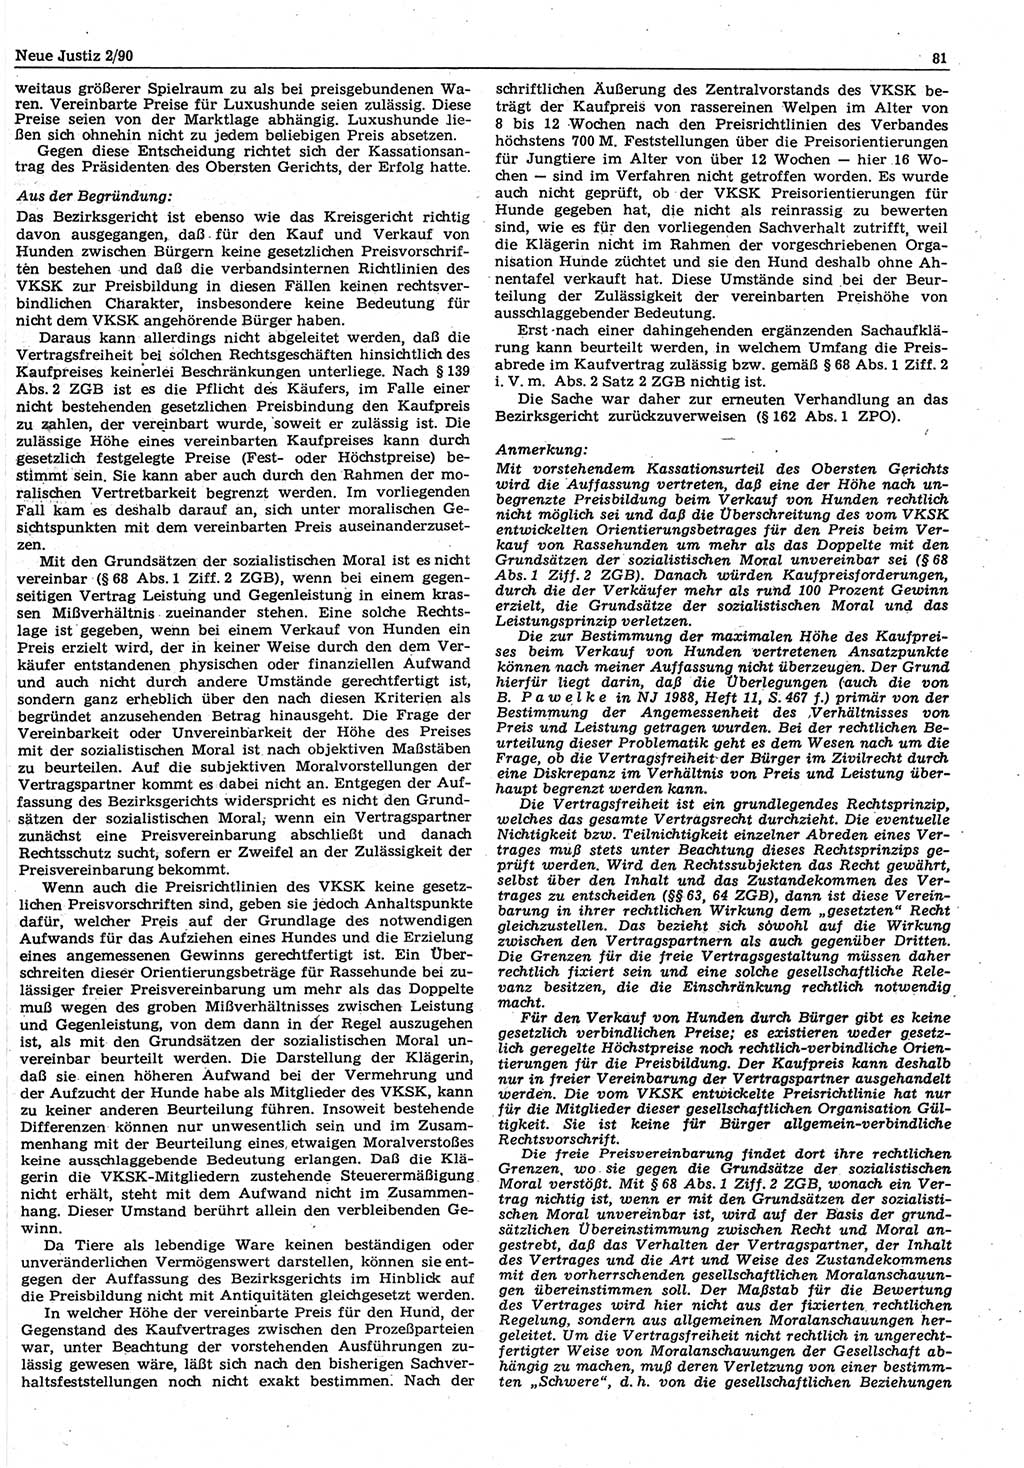 Neue Justiz (NJ), Zeitschrift für Rechtsetzung und Rechtsanwendung [Deutsche Demokratische Republik (DDR)], 44. Jahrgang 1990, Seite 81 (NJ DDR 1990, S. 81)